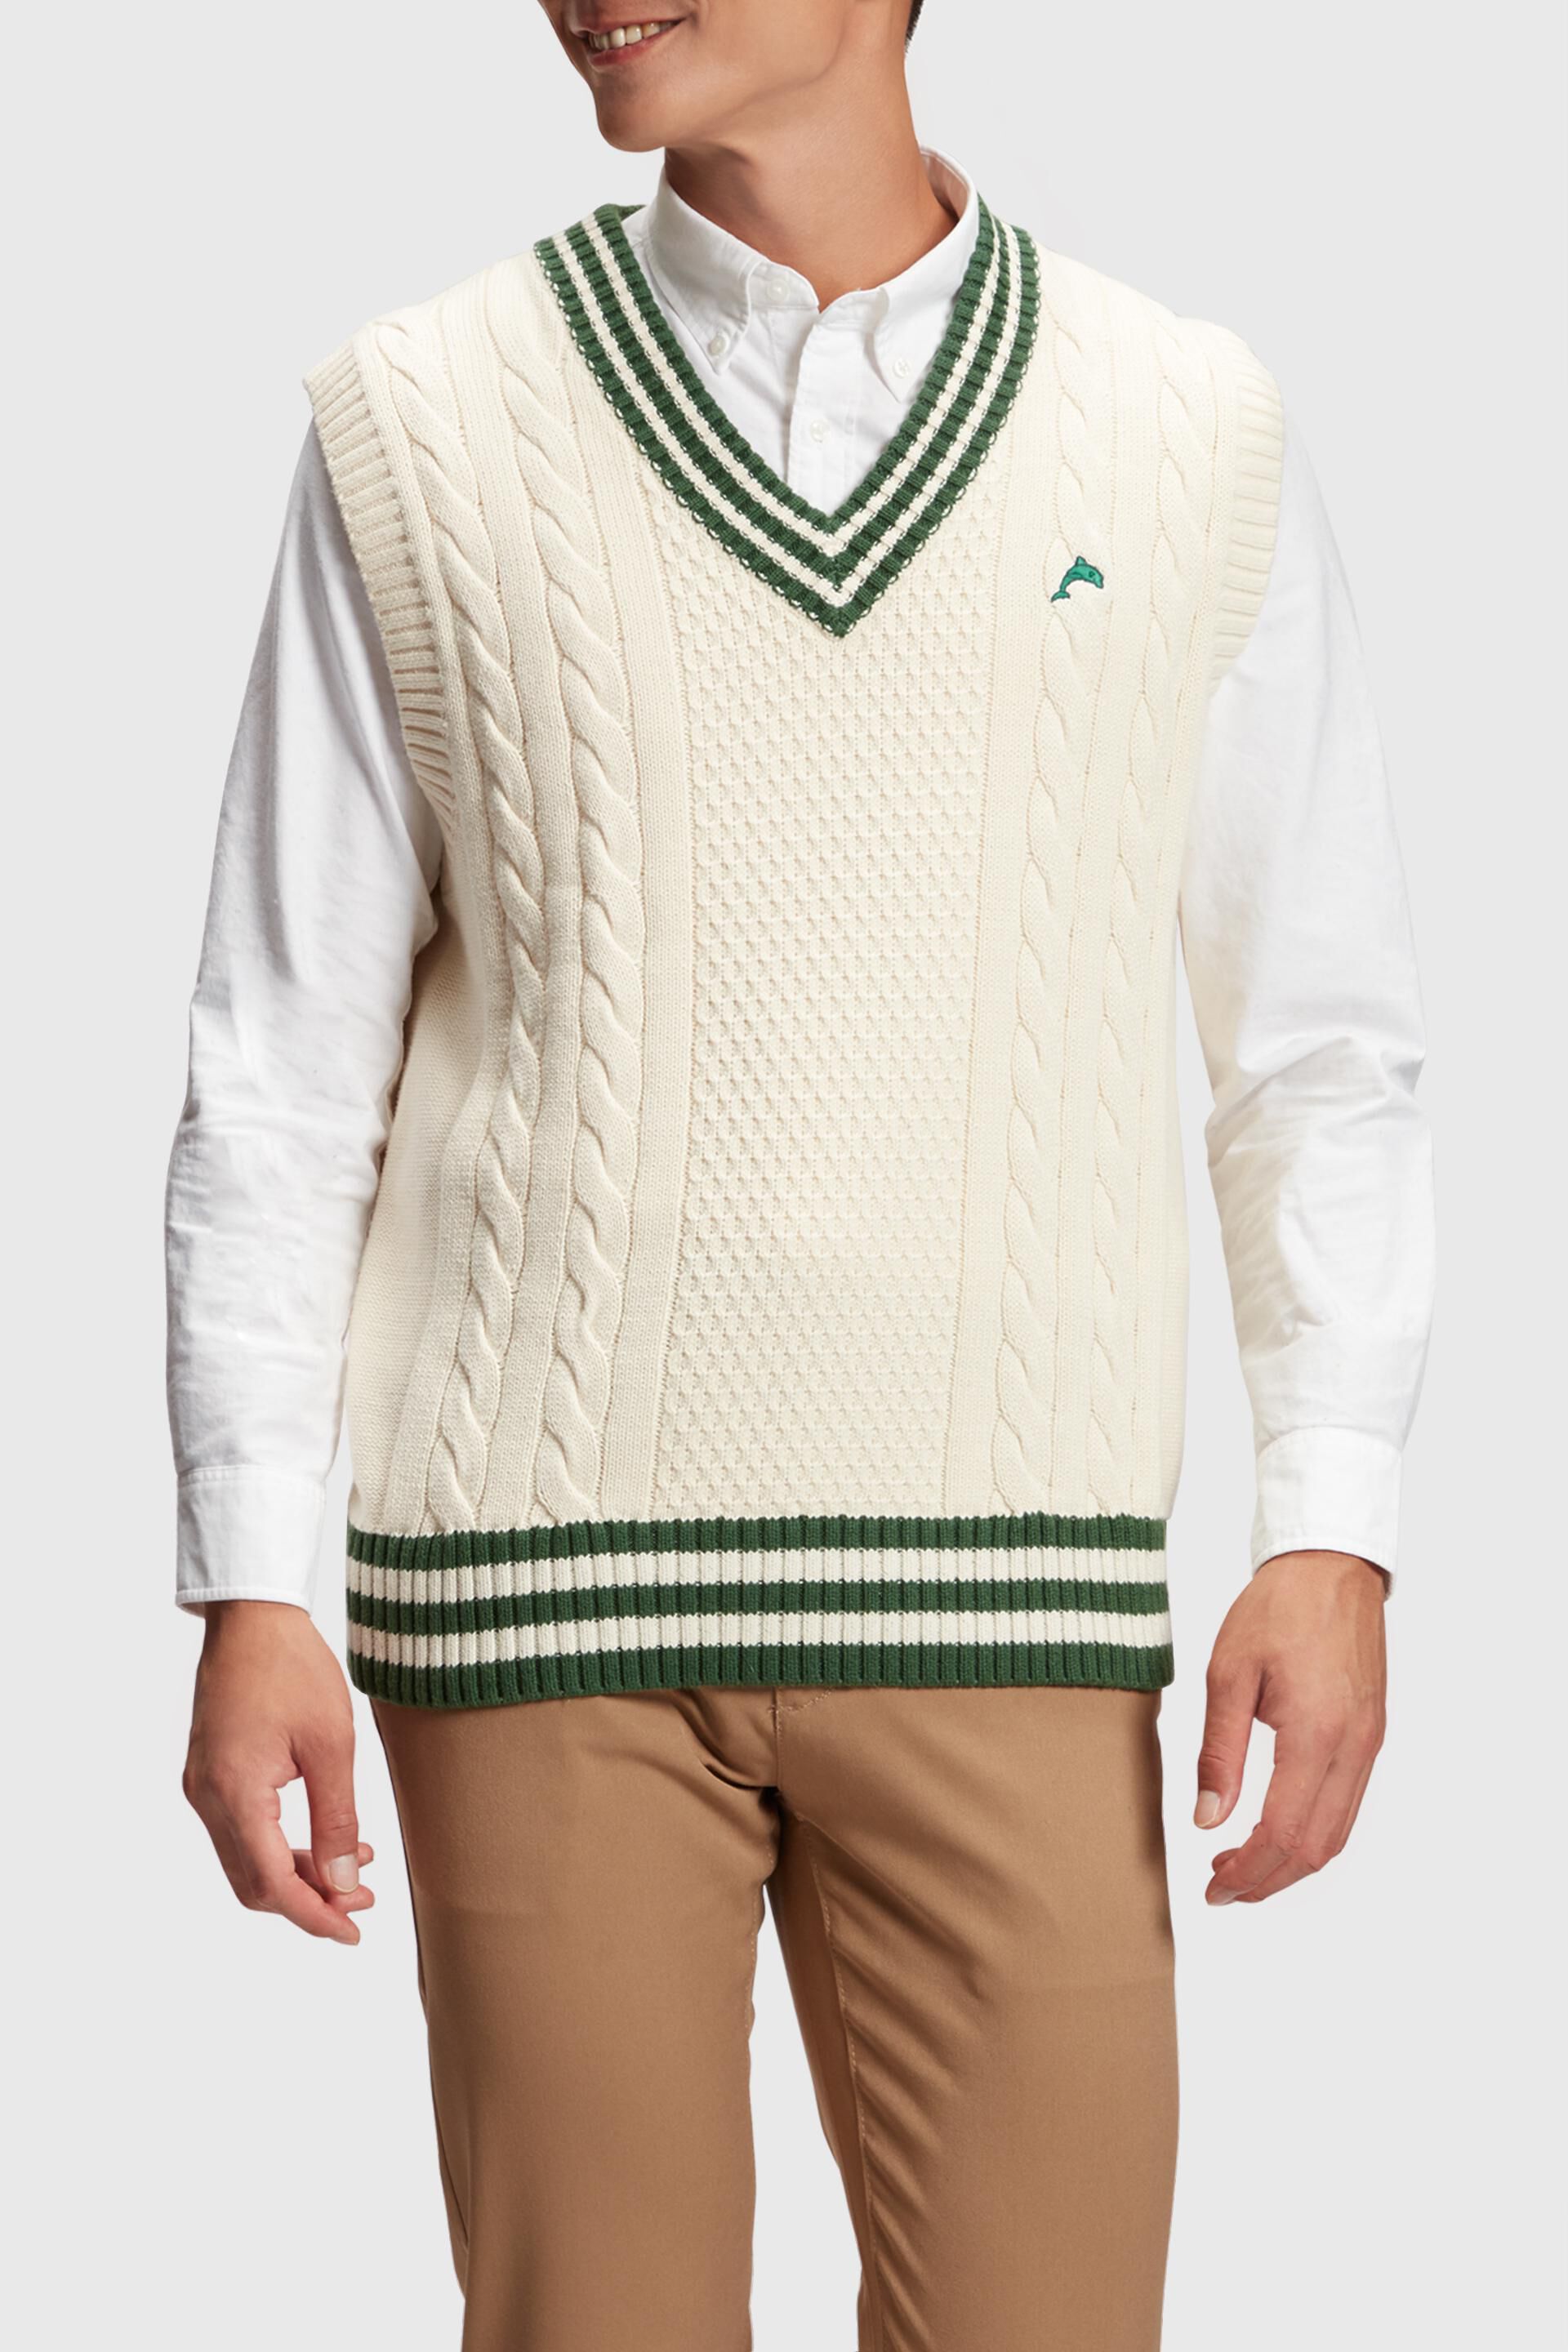 Esprit College vest sweater